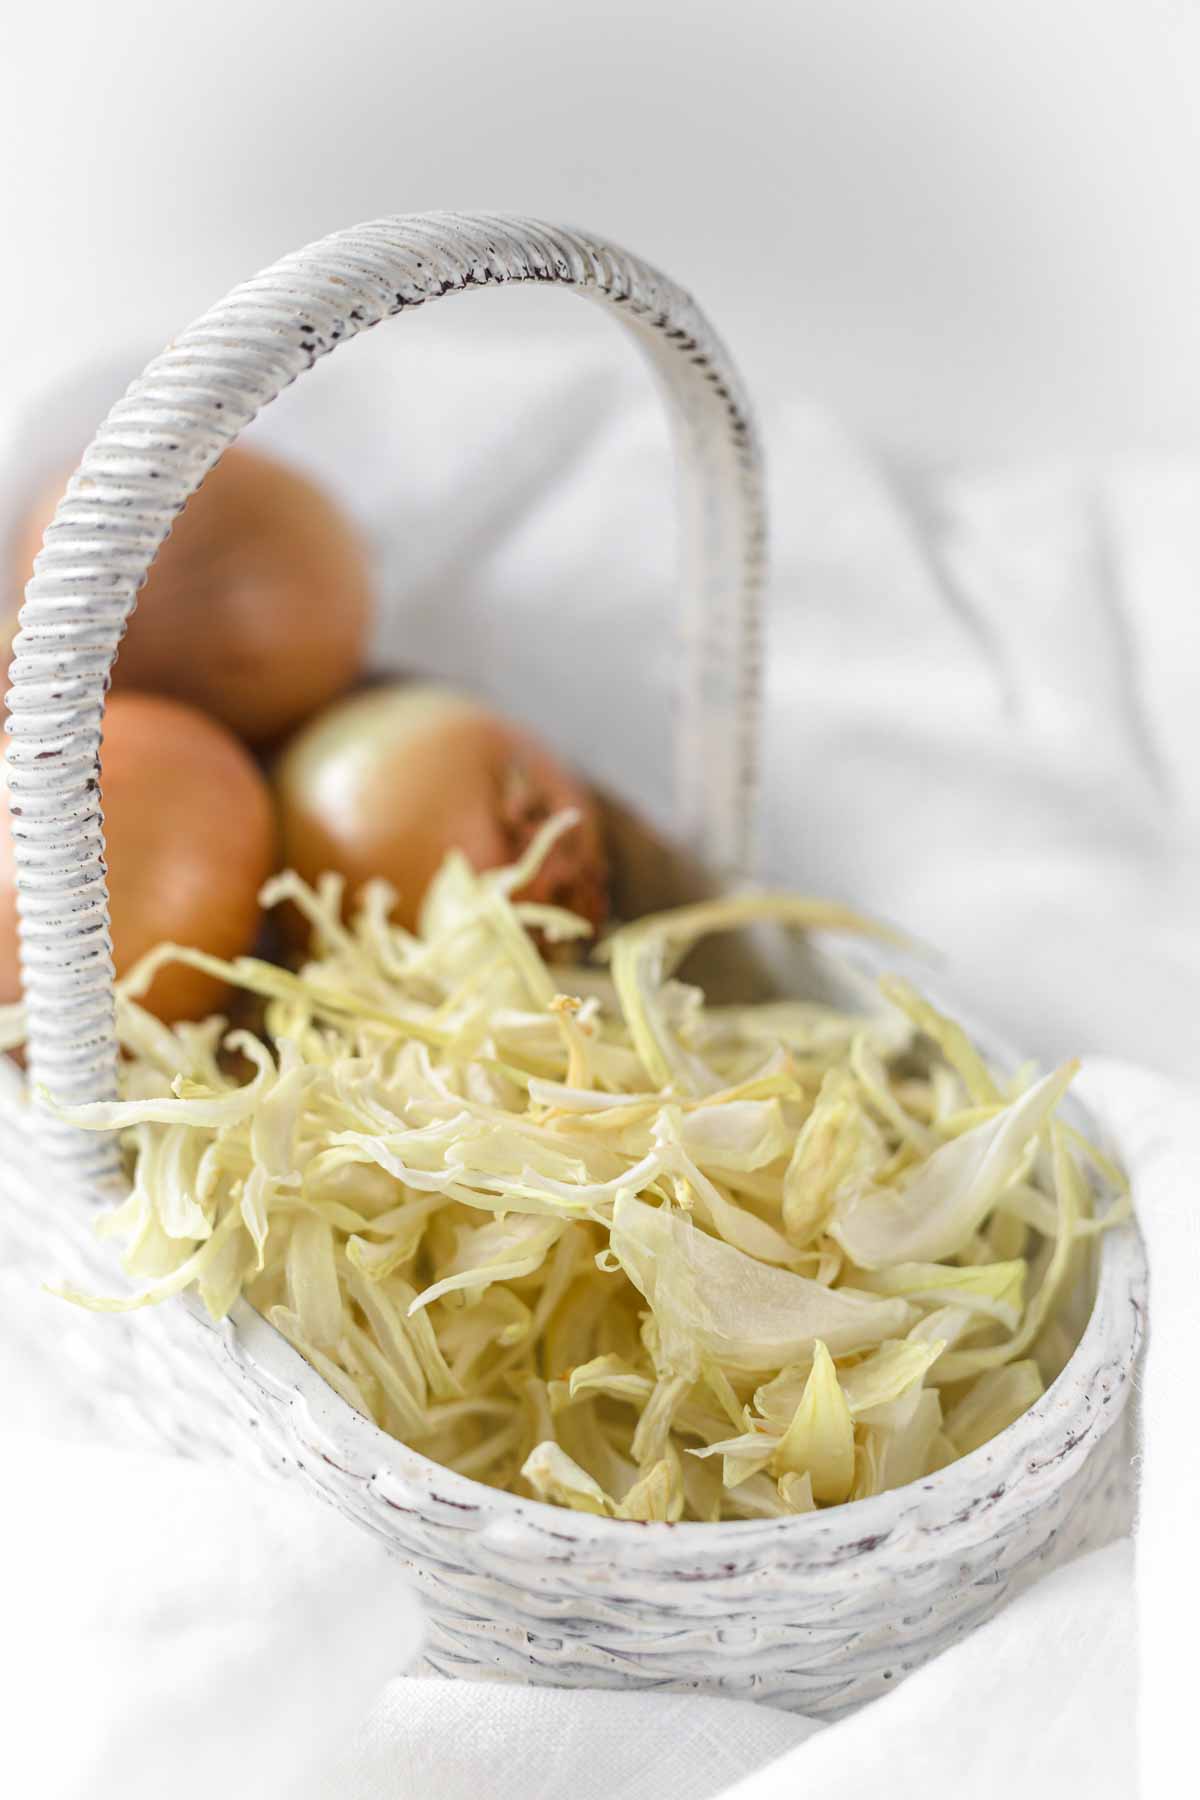 A wicker basket with onions in it.